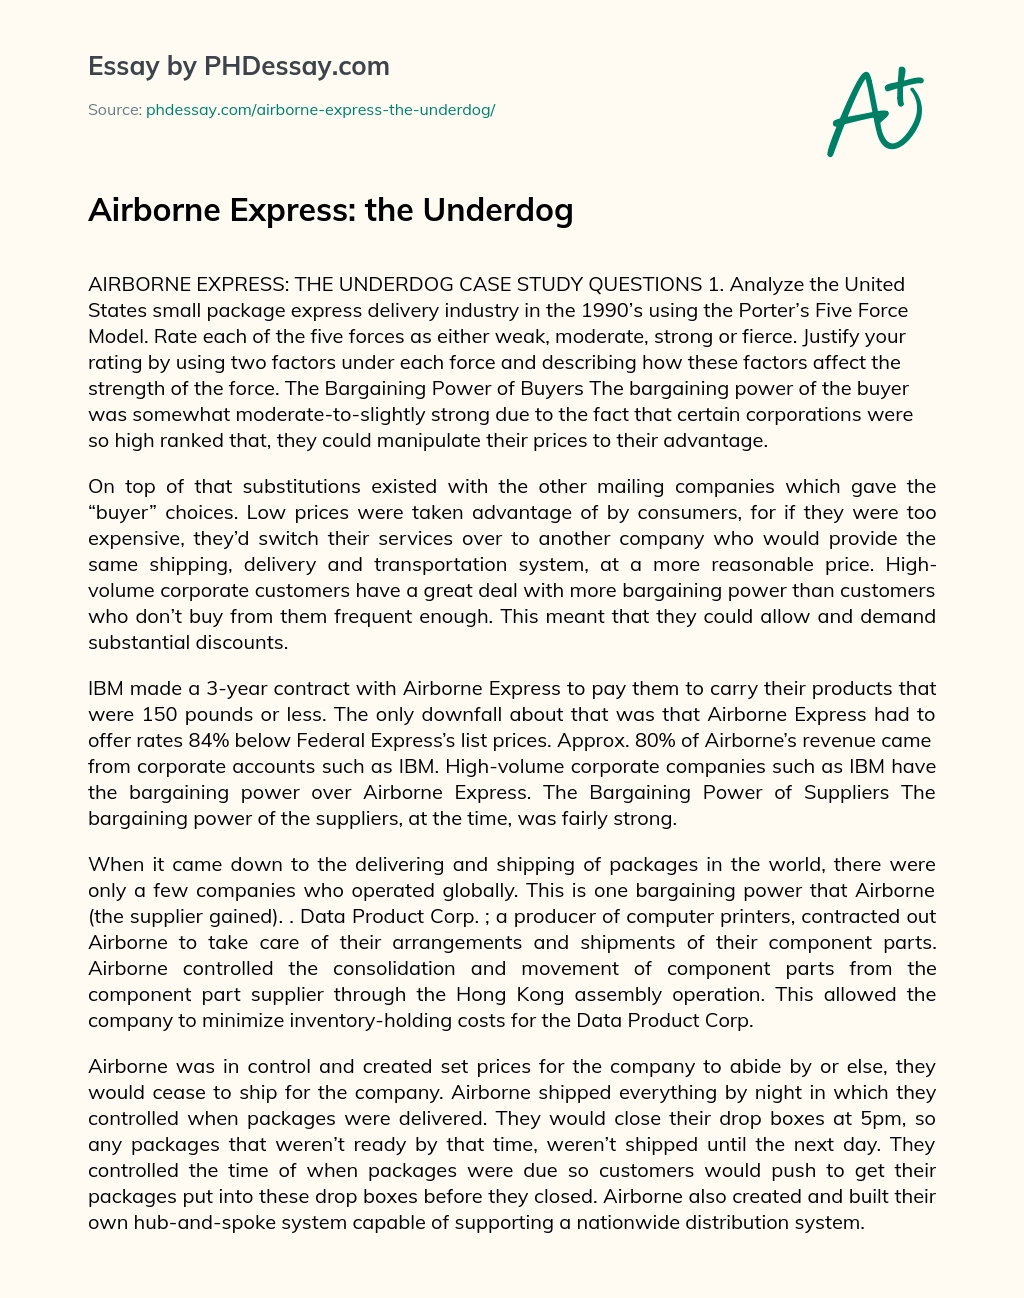 Airborne Express: the Underdog essay